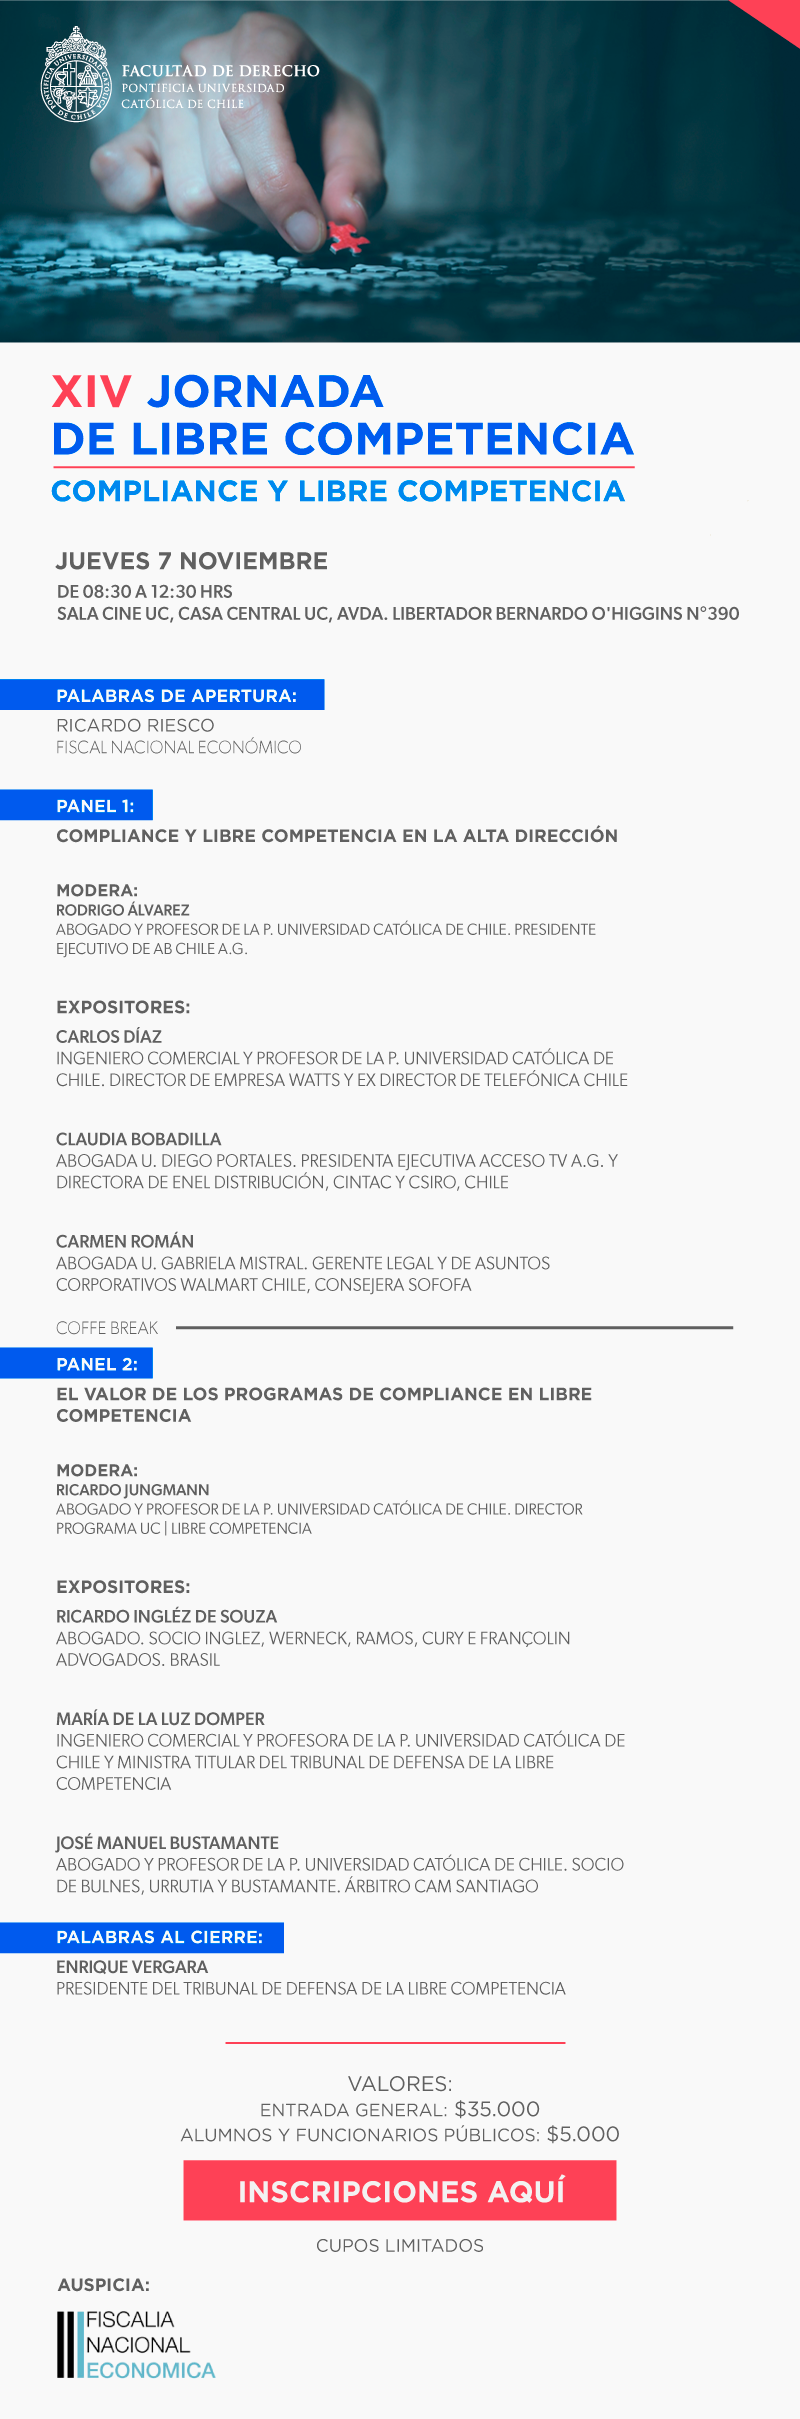 XIV Jornada de Libre Competencia: Compliance y Libre Competencia